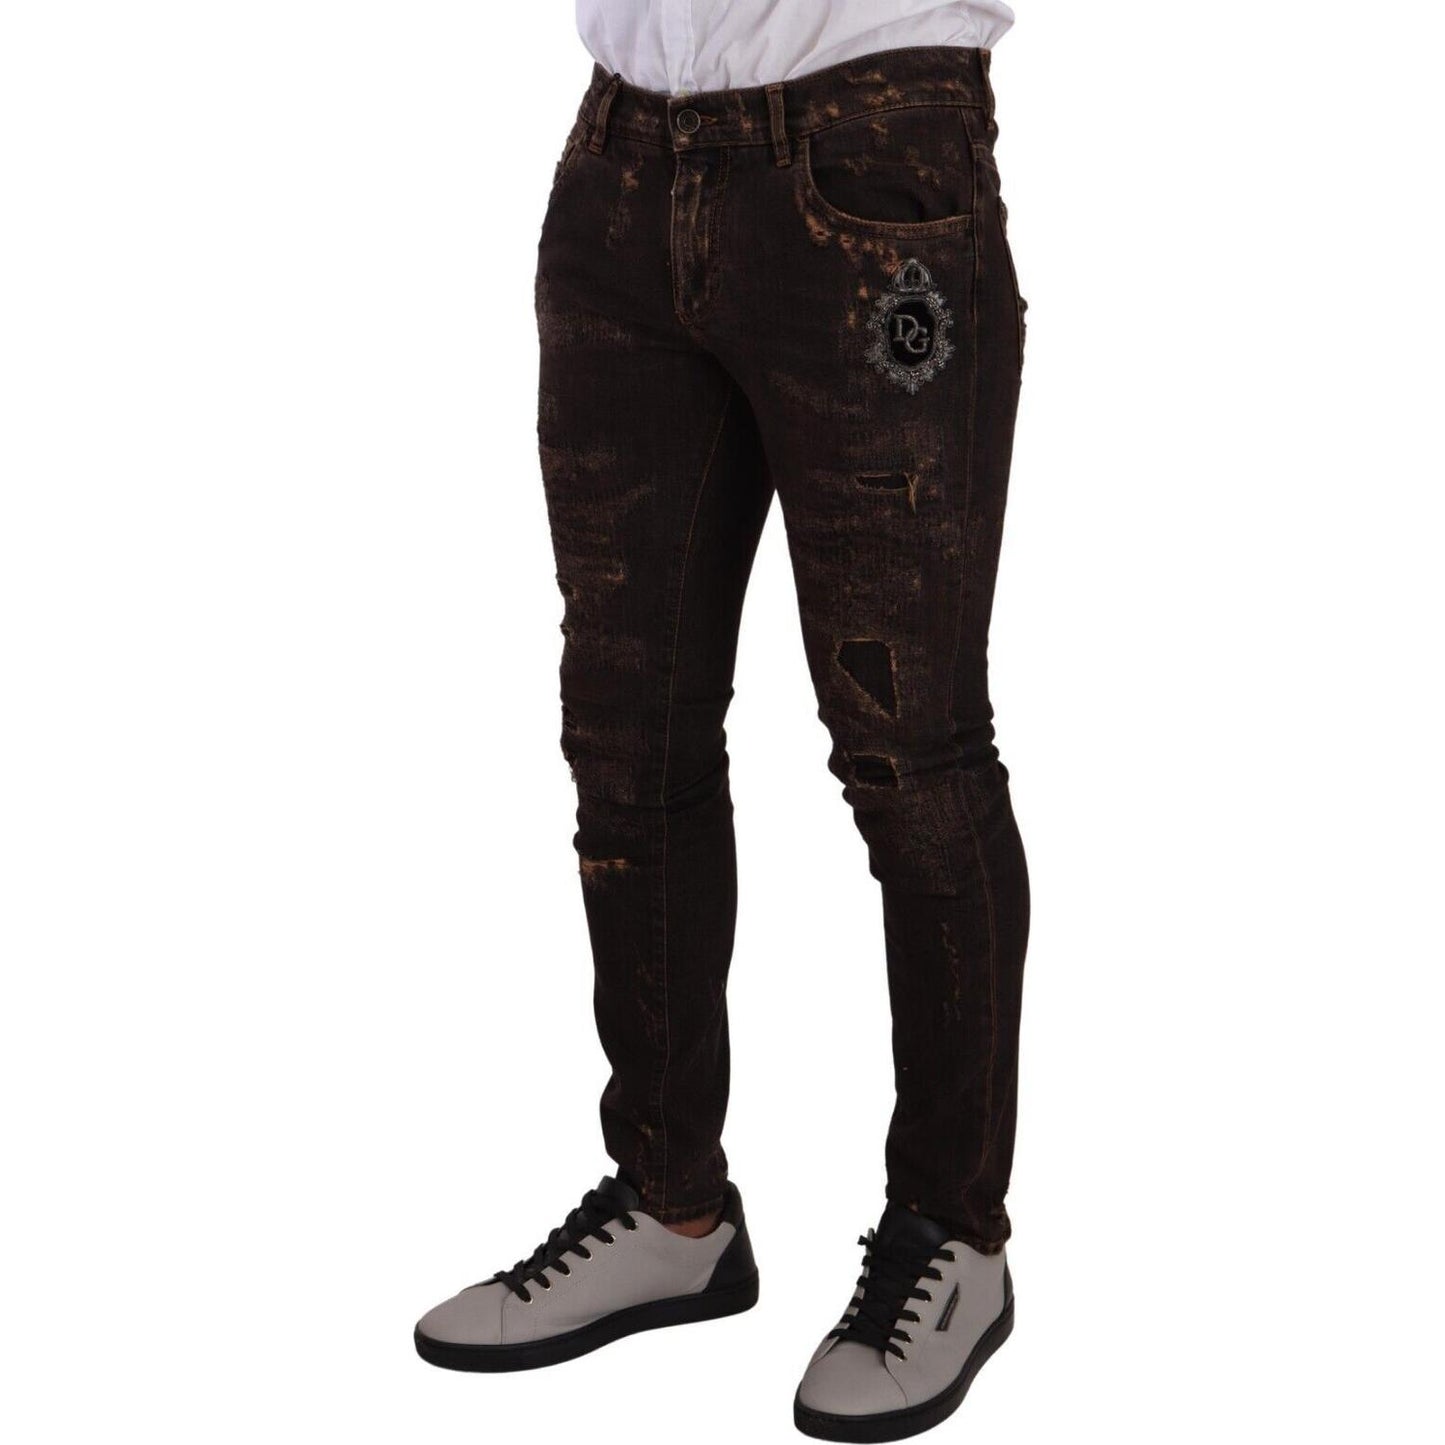 Dolce & Gabbana Slim Fit Distressed Skinny Denim Jeans brown-distressed-slim-fit-skinny-denim-jeans s-l1600-123-b1744adb-daf.jpg